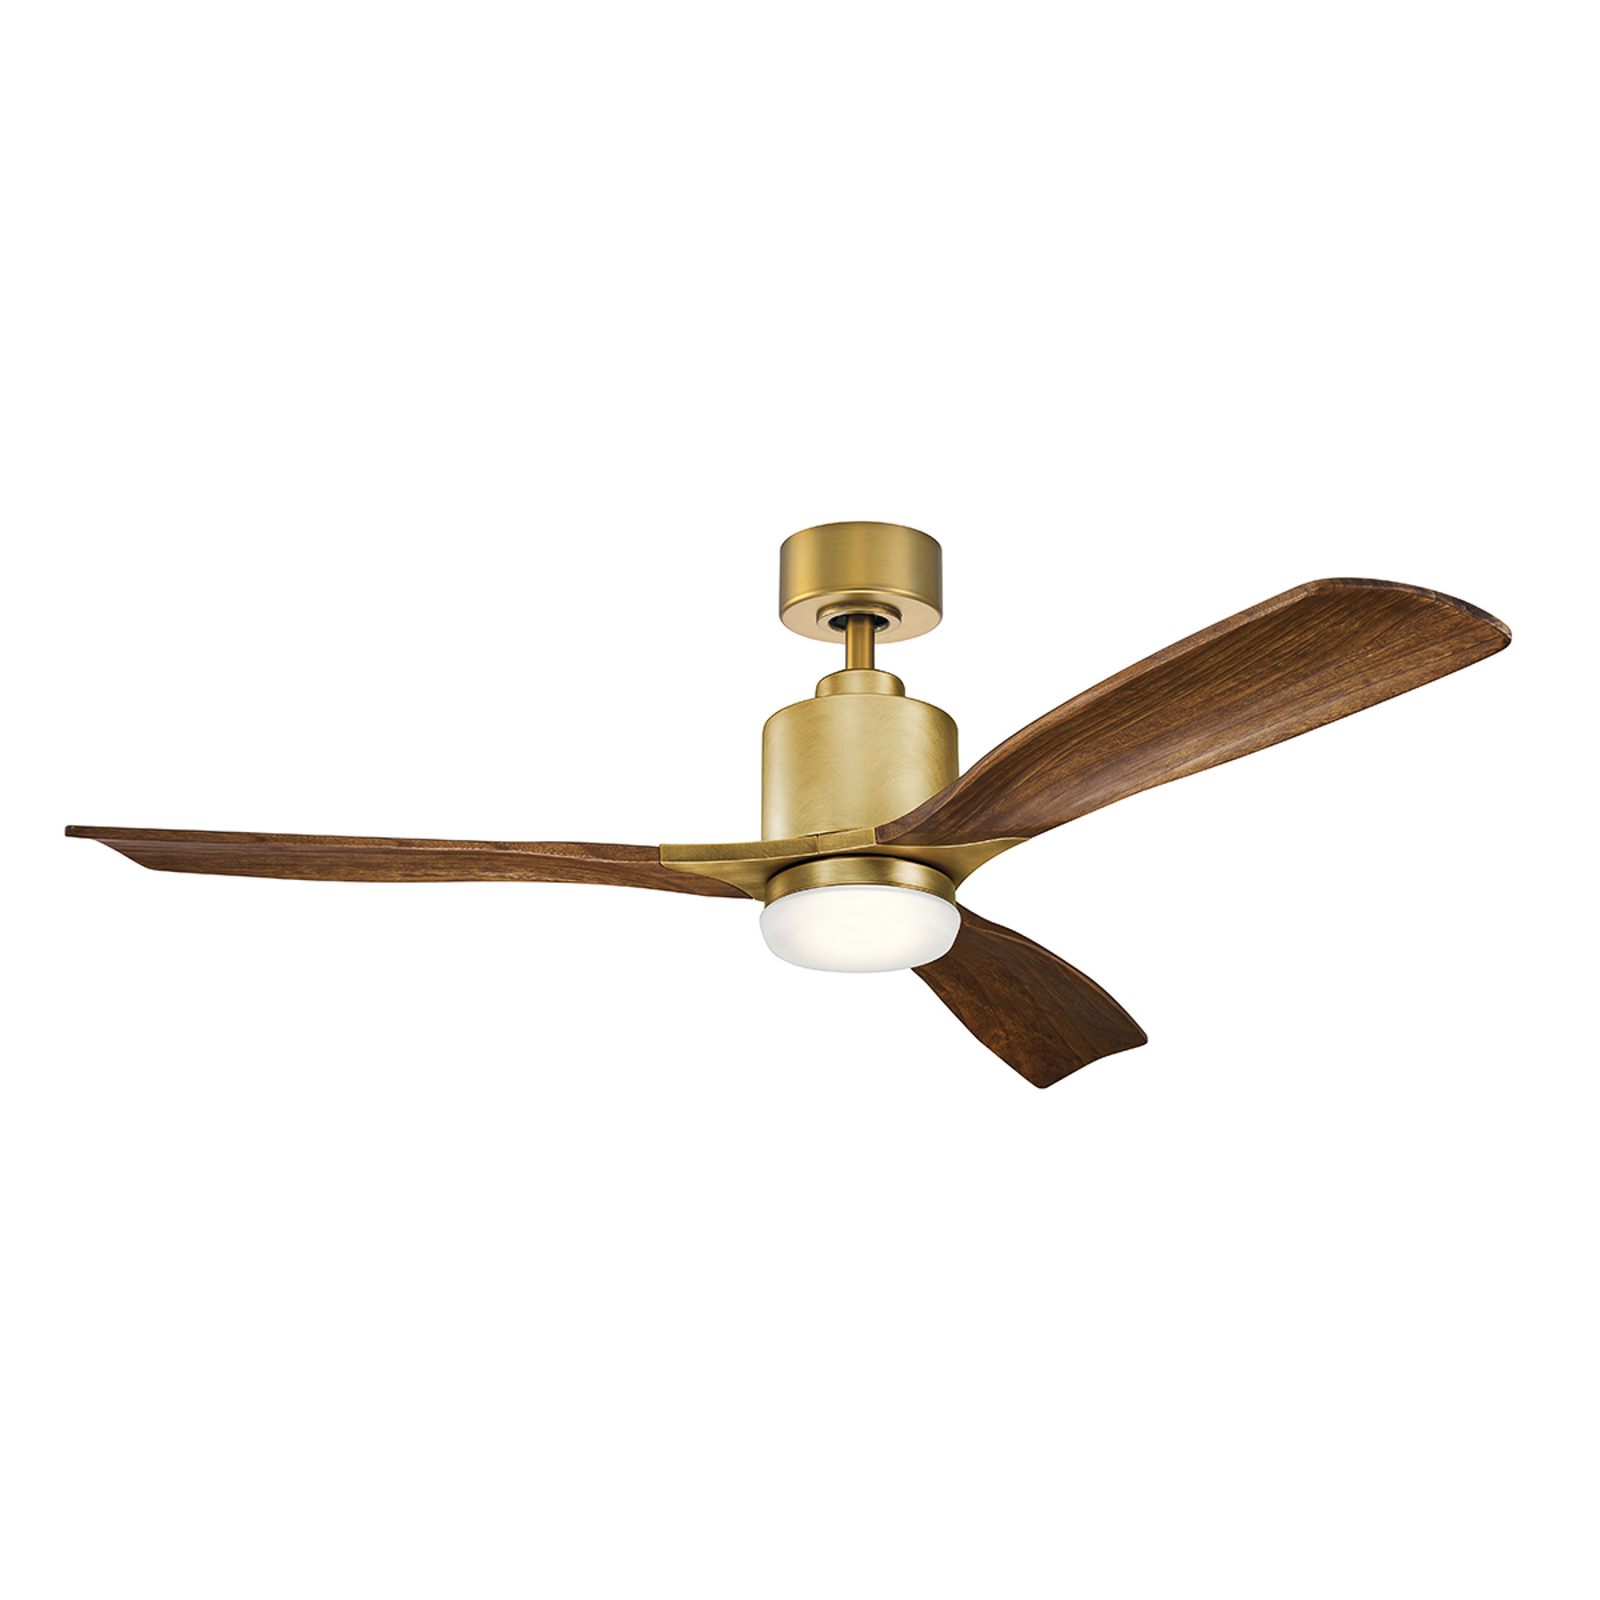 Ridley II LED ceiling fan, three-blade